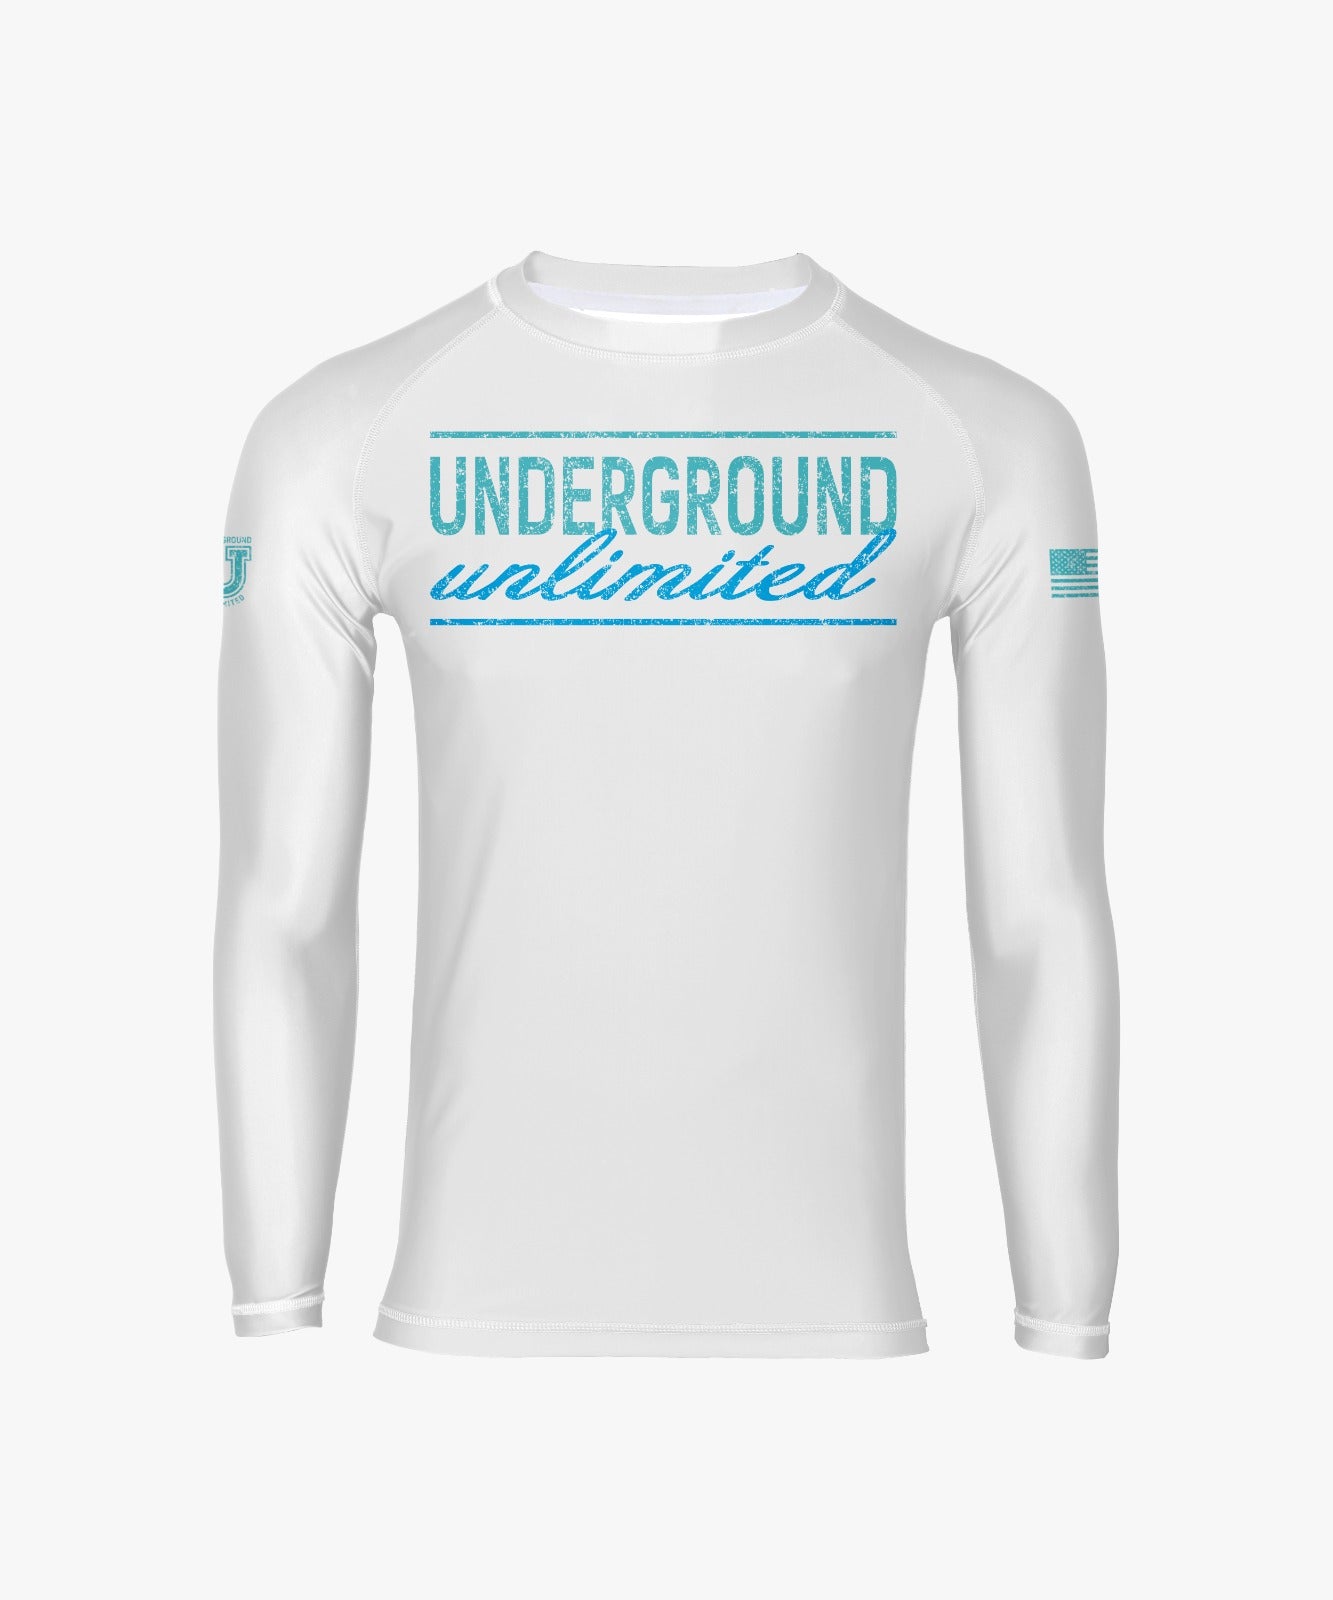 Underground Unlimited Performance Dri Tech Design ~ White